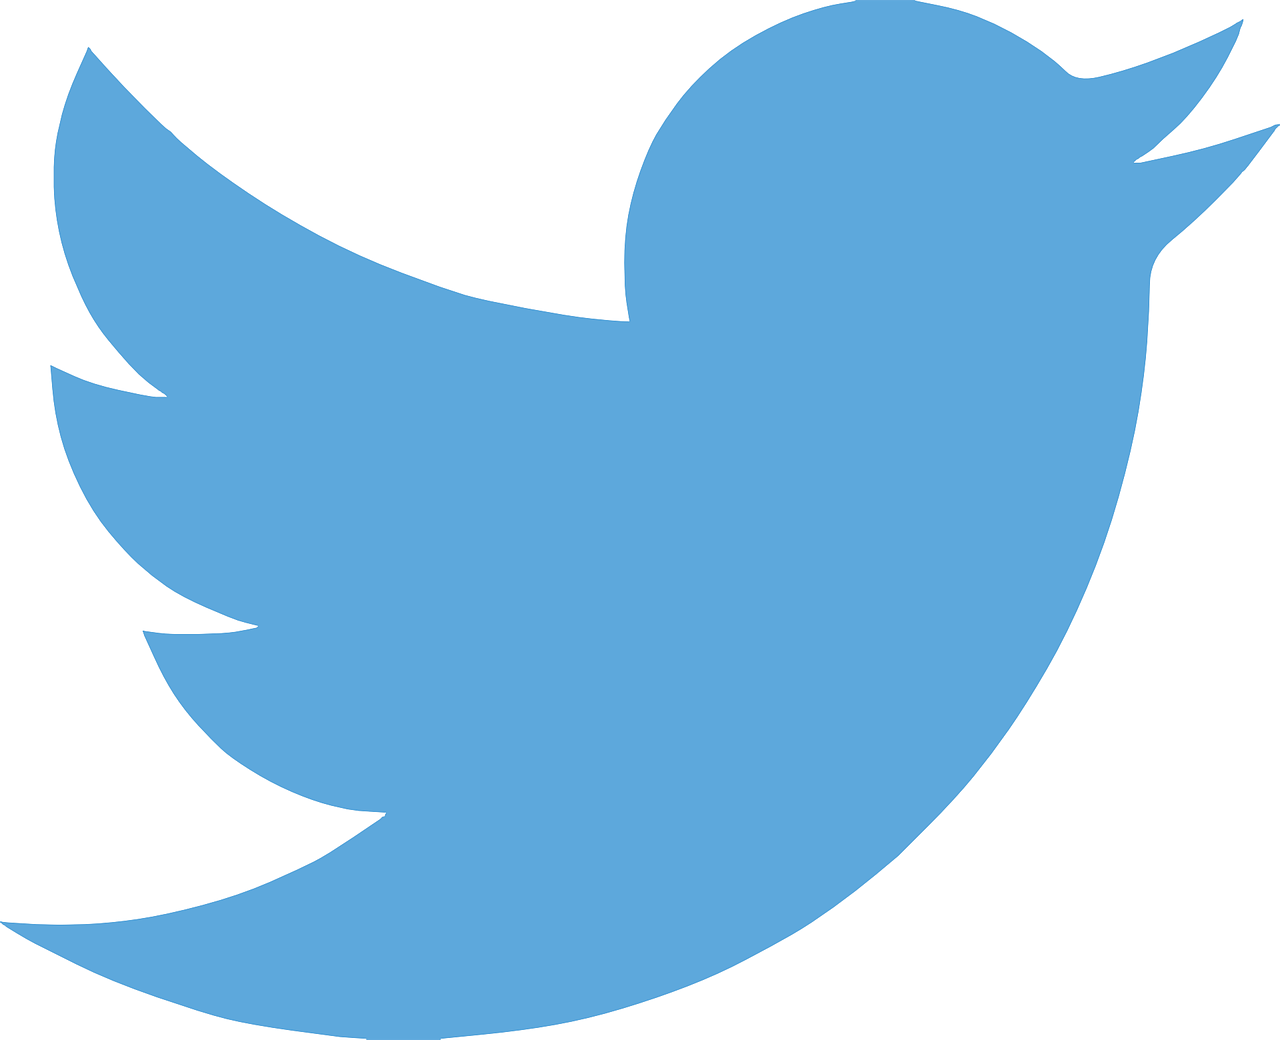 logo du réseau social Twitter